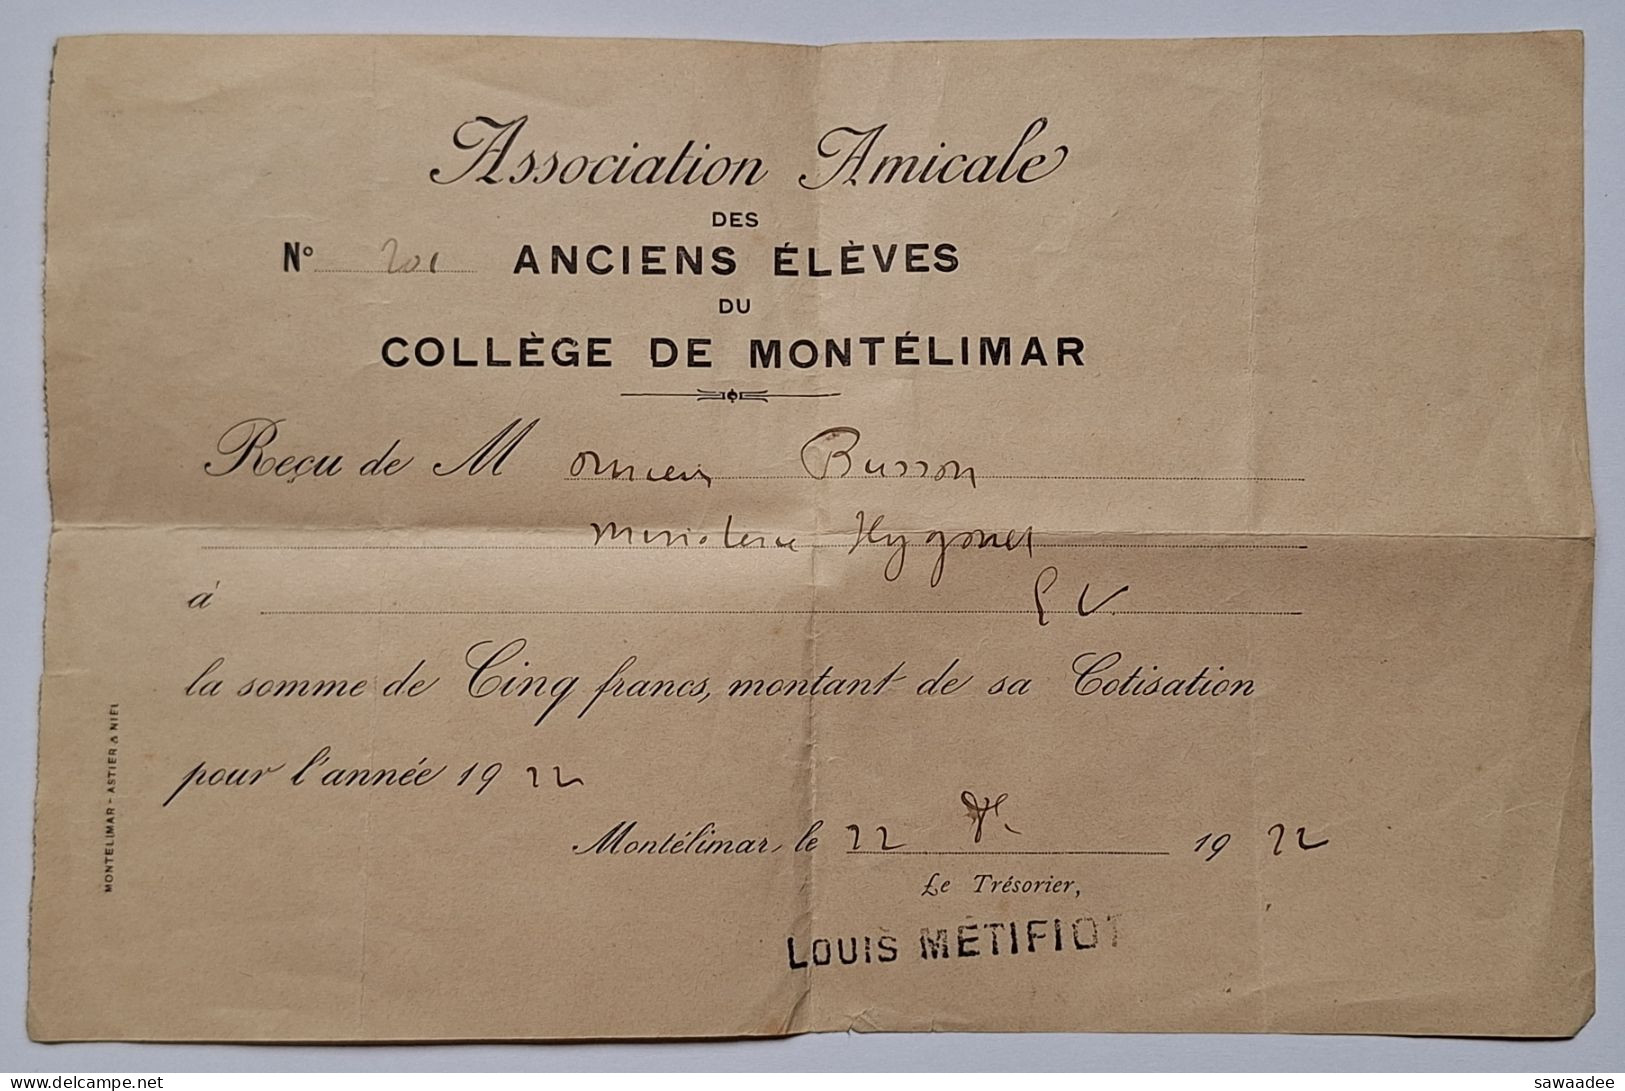 DOCUMENT - ASSOCIATION AMICALE DES ANCIENS ELEVES DU COLLEGE DE MONTELIMAR - COTISATION 1924 - Diplome Und Schulzeugnisse